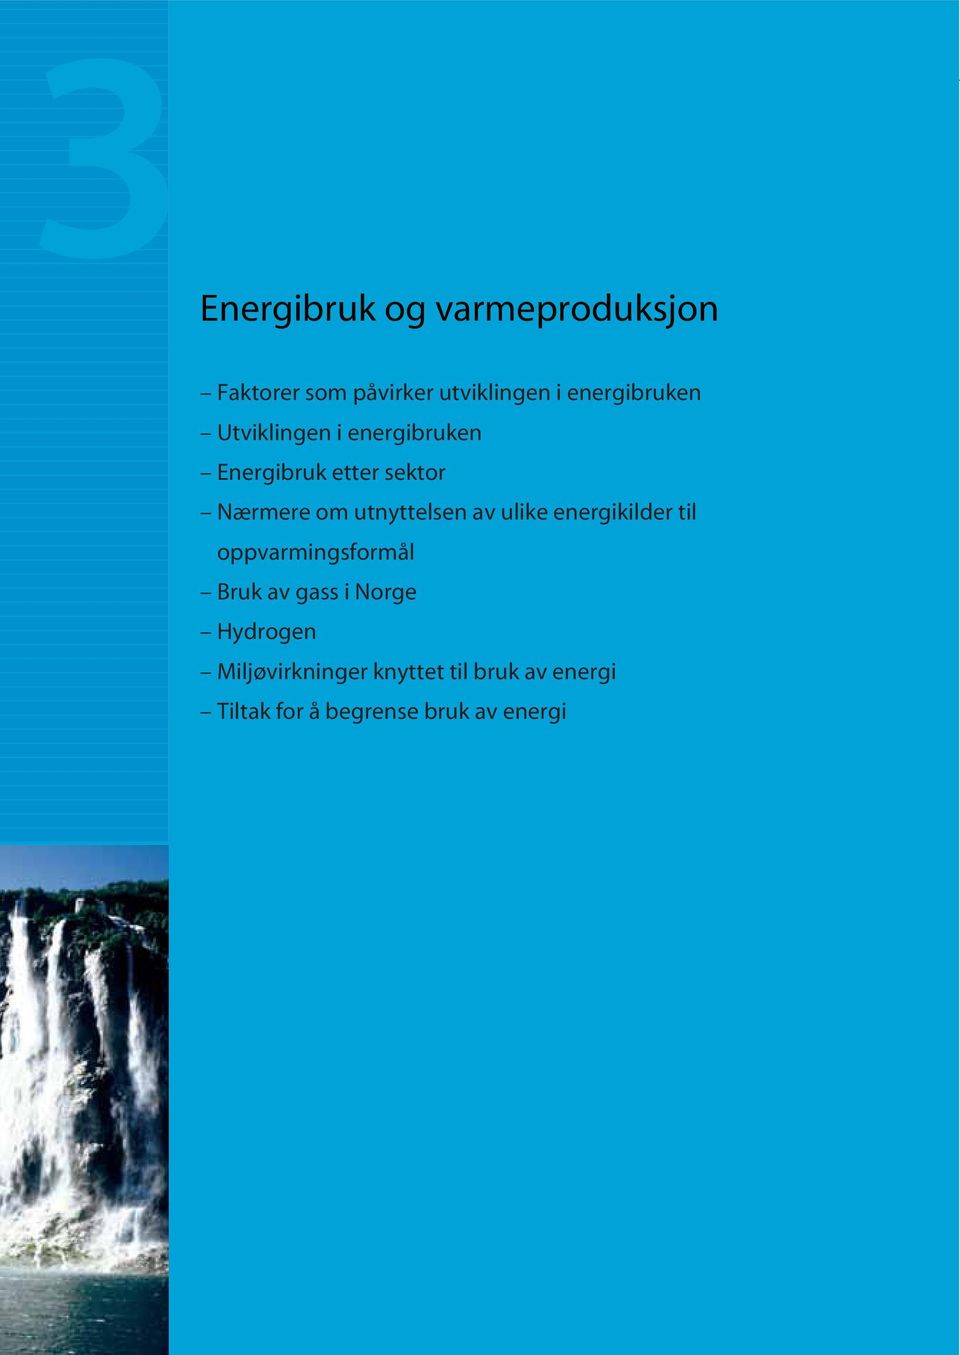 utnyttelsen av ulike energikilder til oppvarmingsformål Bruk av gass i Norge